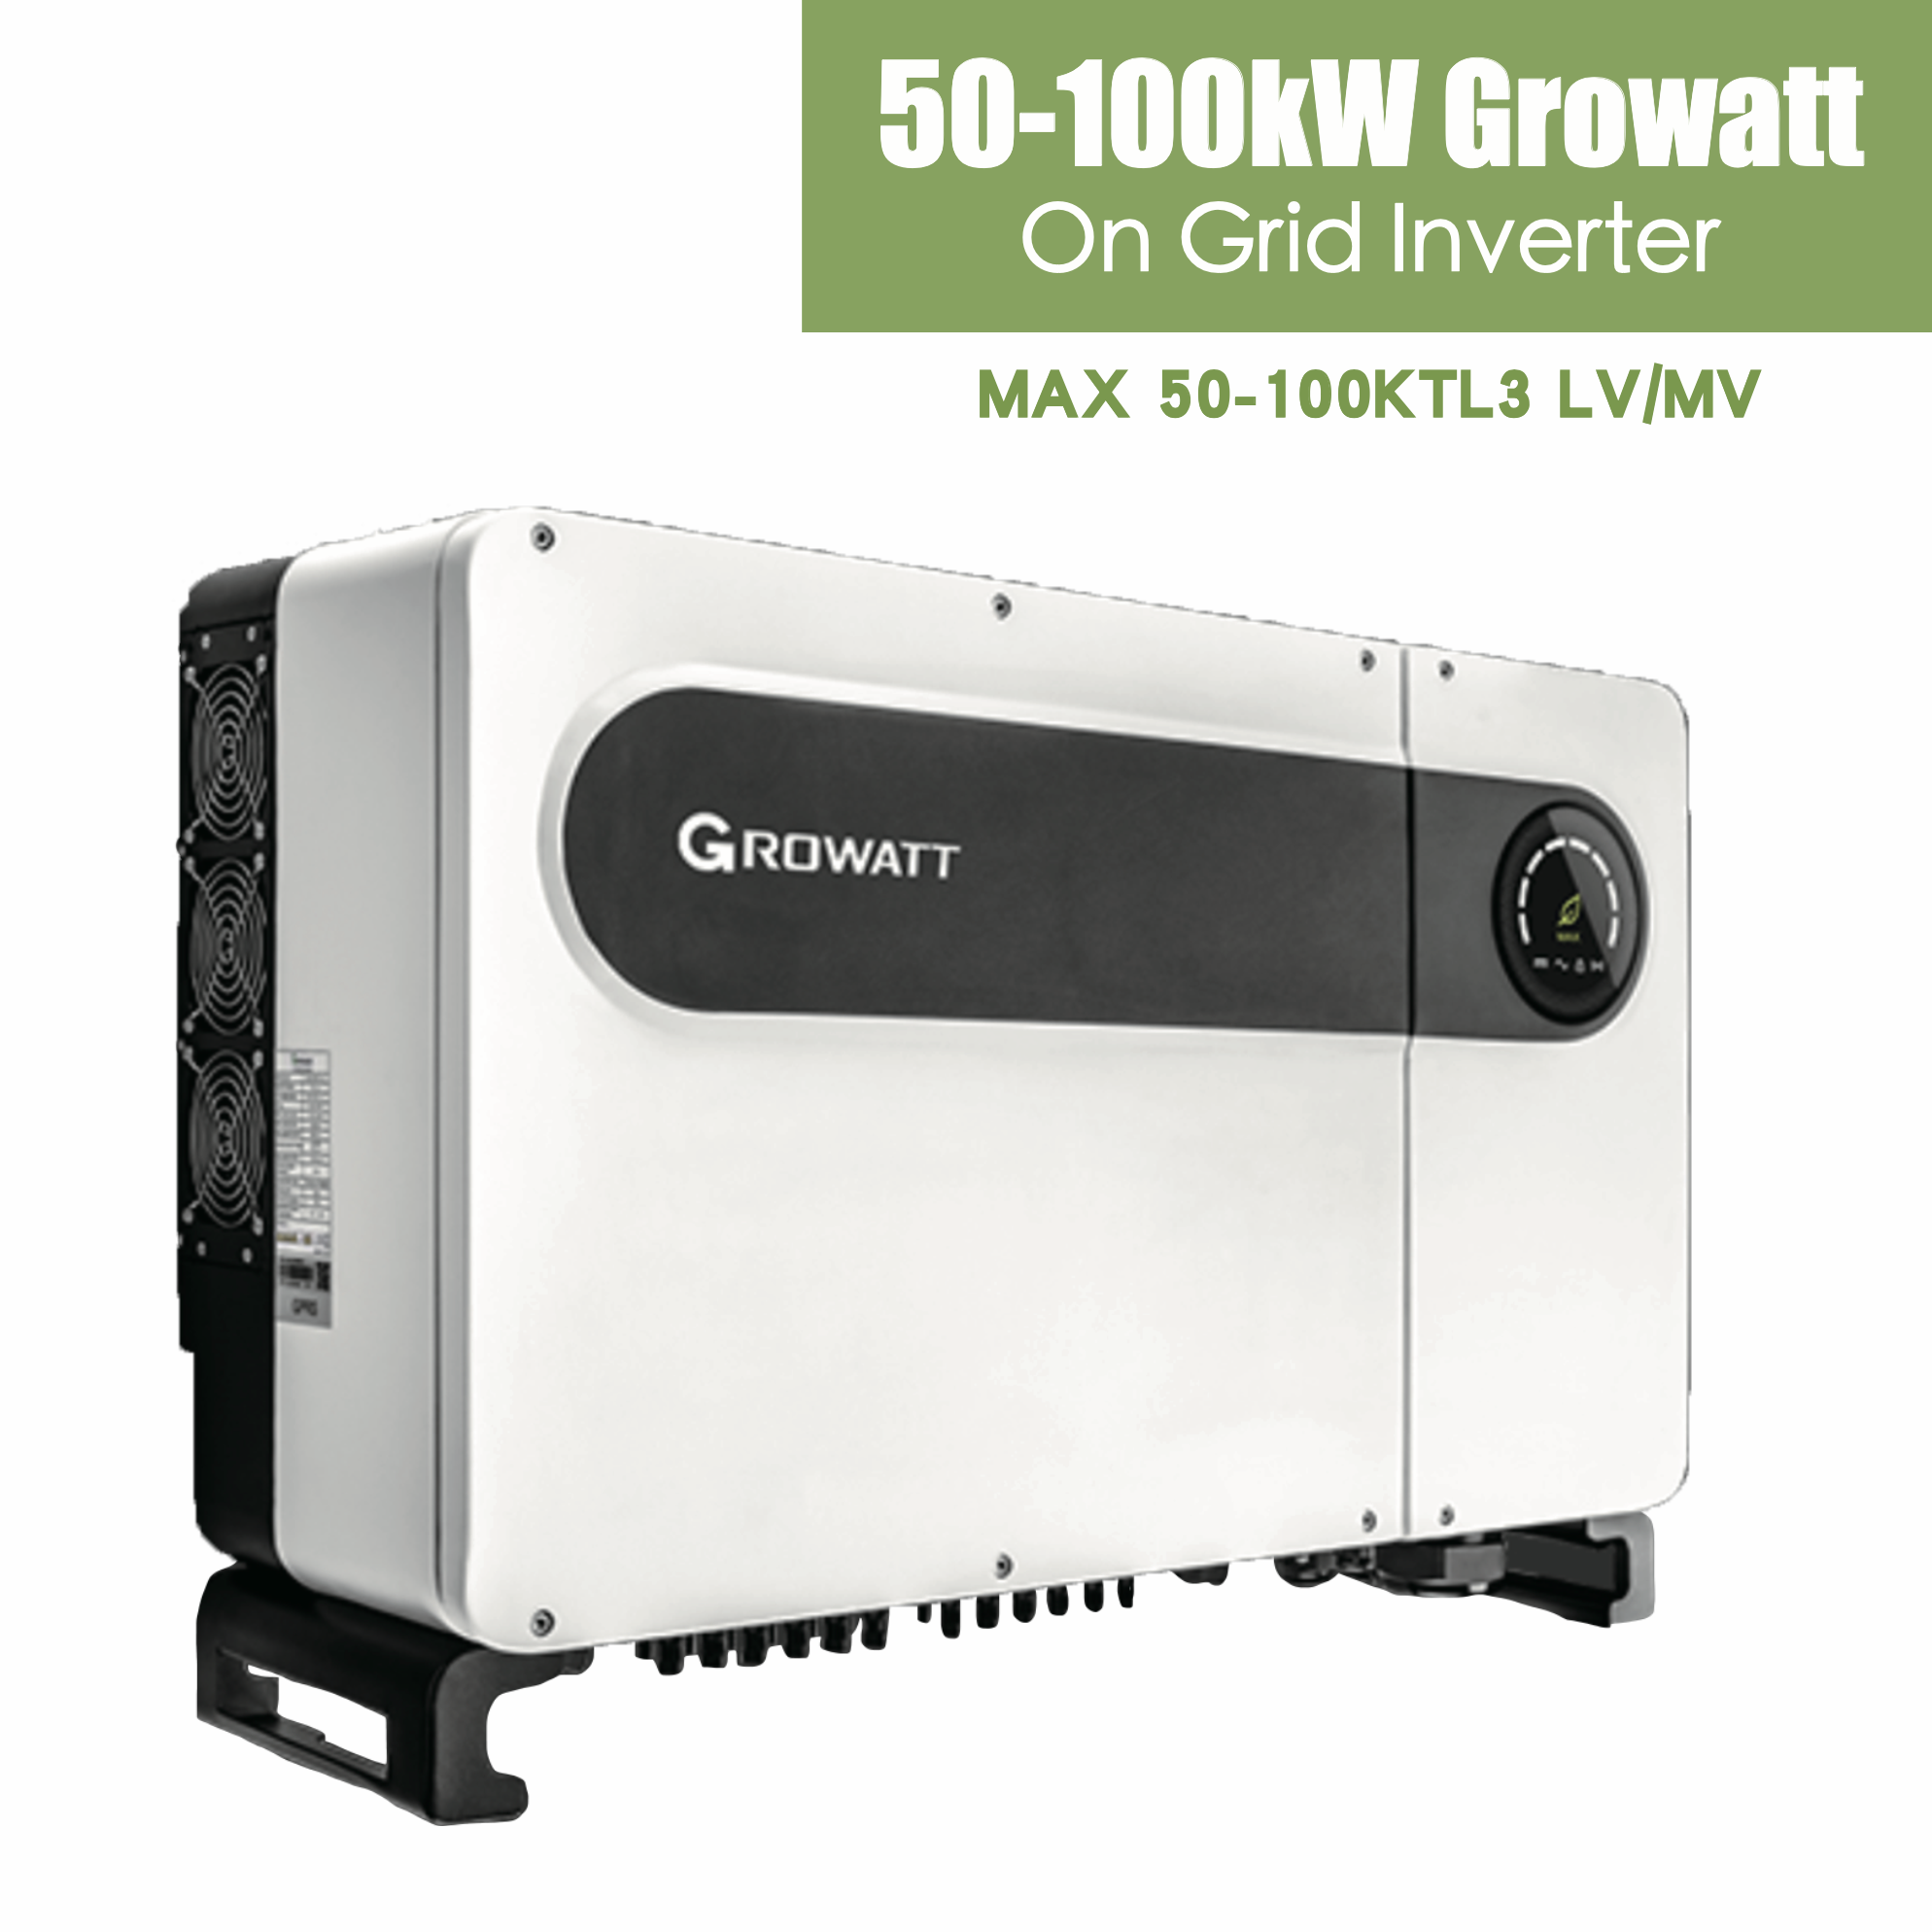 Growatt MAX 50-100KTL3 LV/MV Featured Image